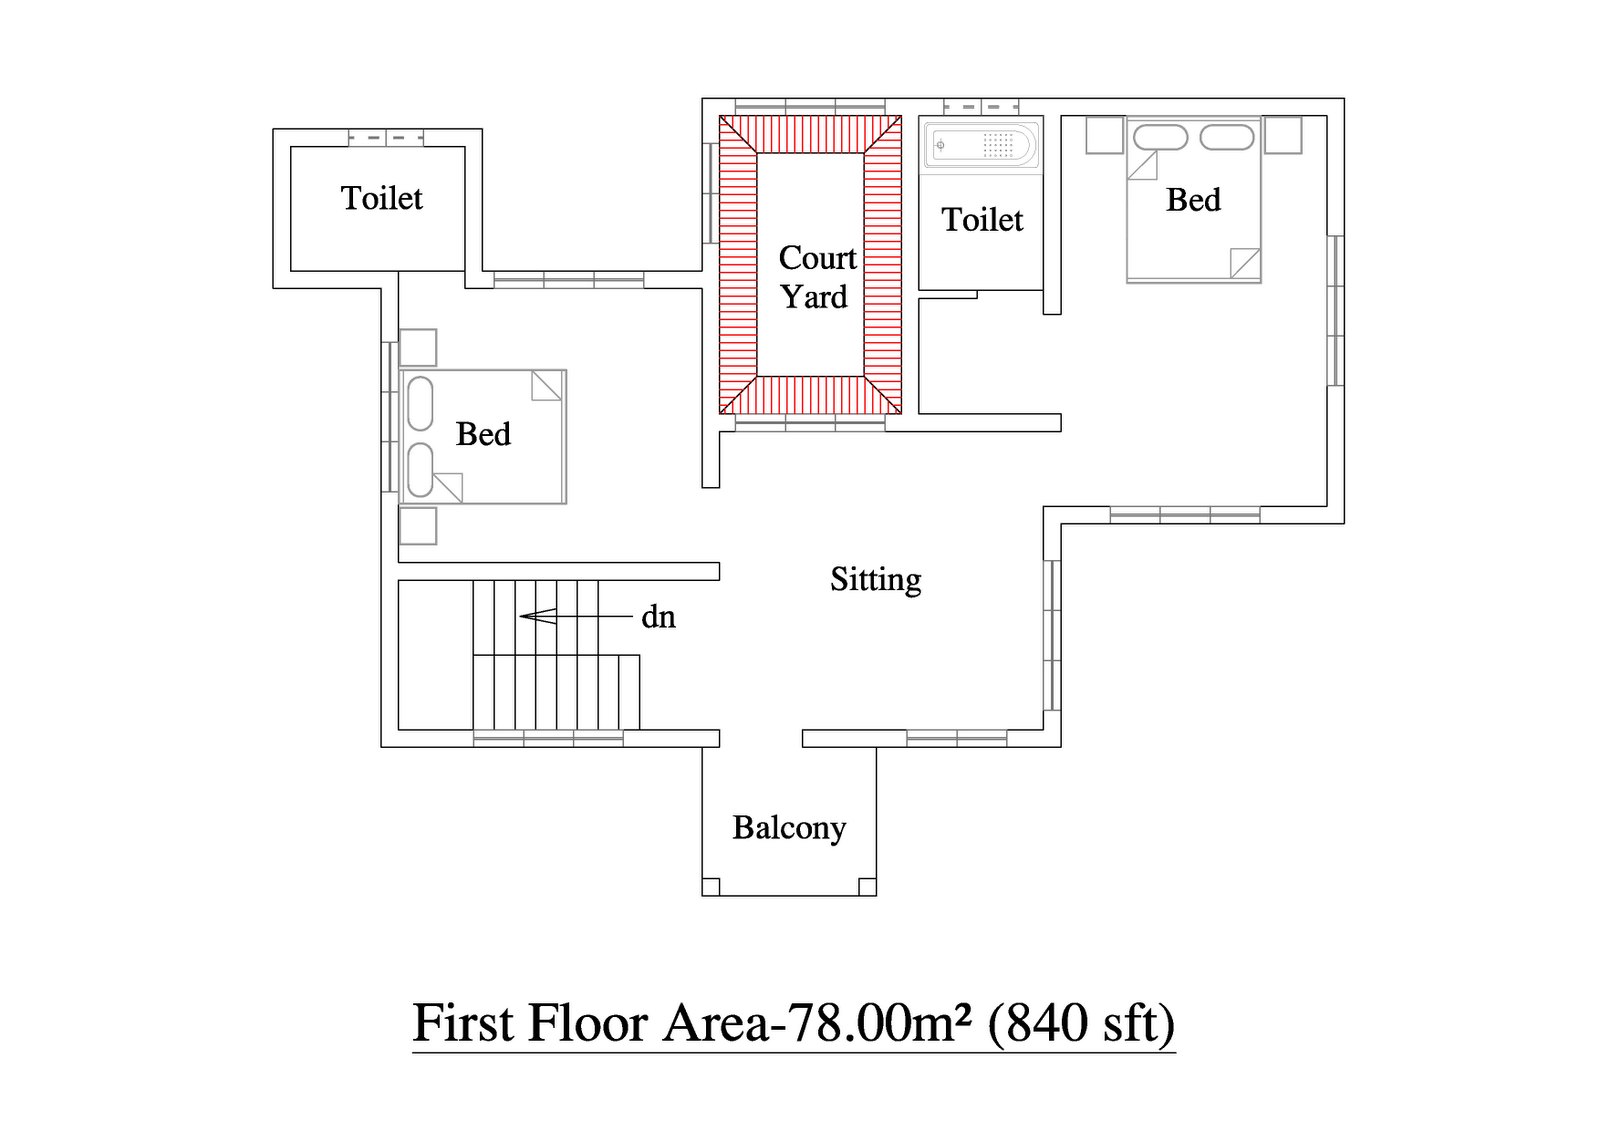 2 Bedroom Apartment Building Floor Plans